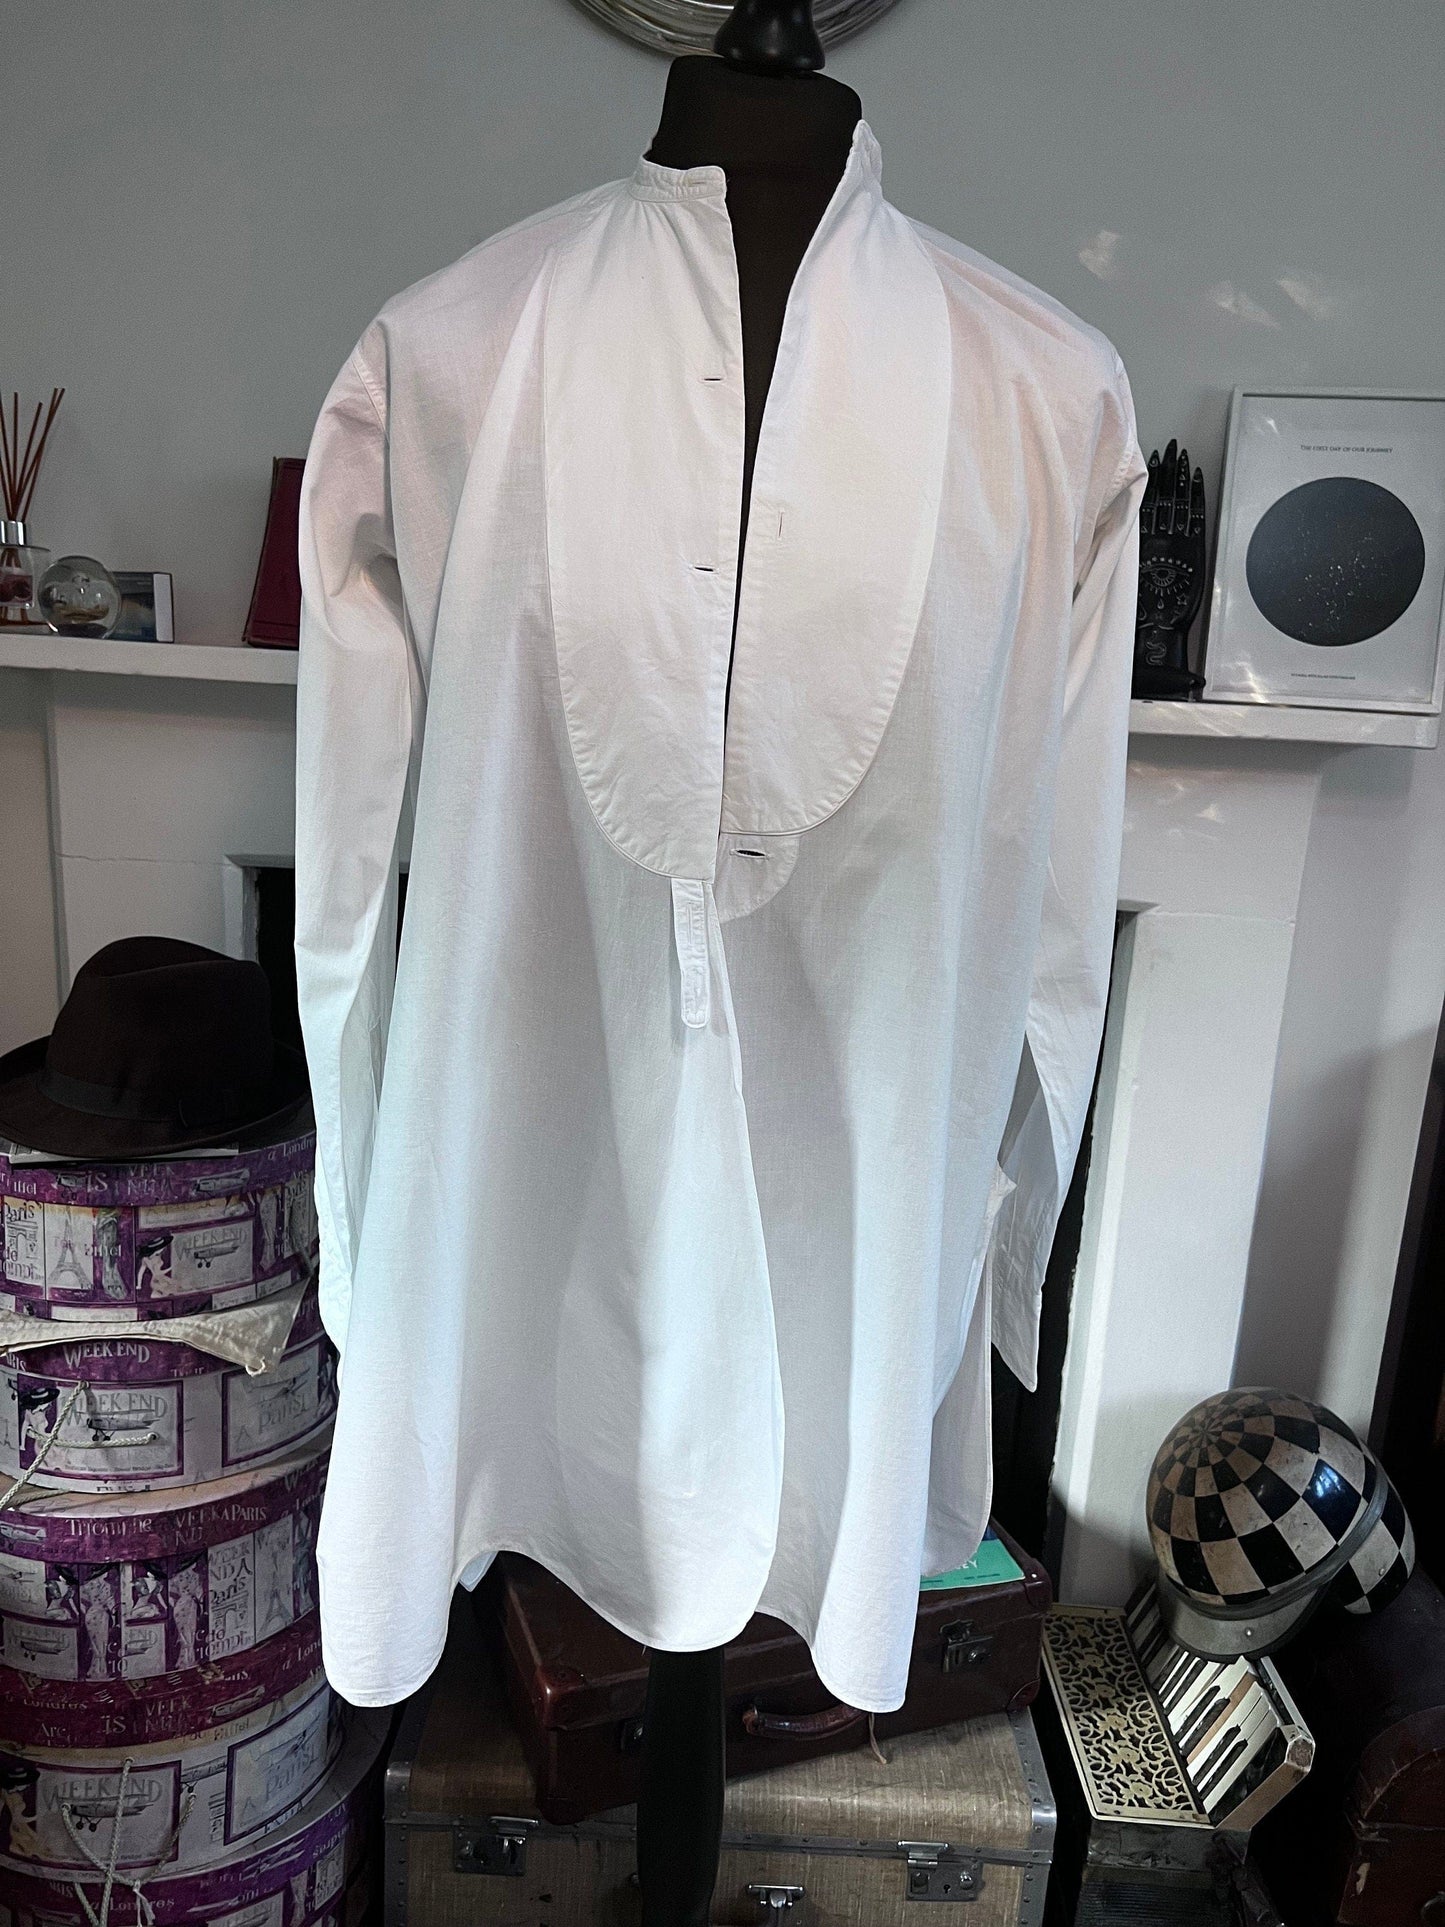 Vintage 1960s Dress Shirt Ryder Amies Cambridge, Bespoke White Shirt, Pleated,Tuxedo Shirt, vintage dress shirt, vintage shirt, men’s shirt